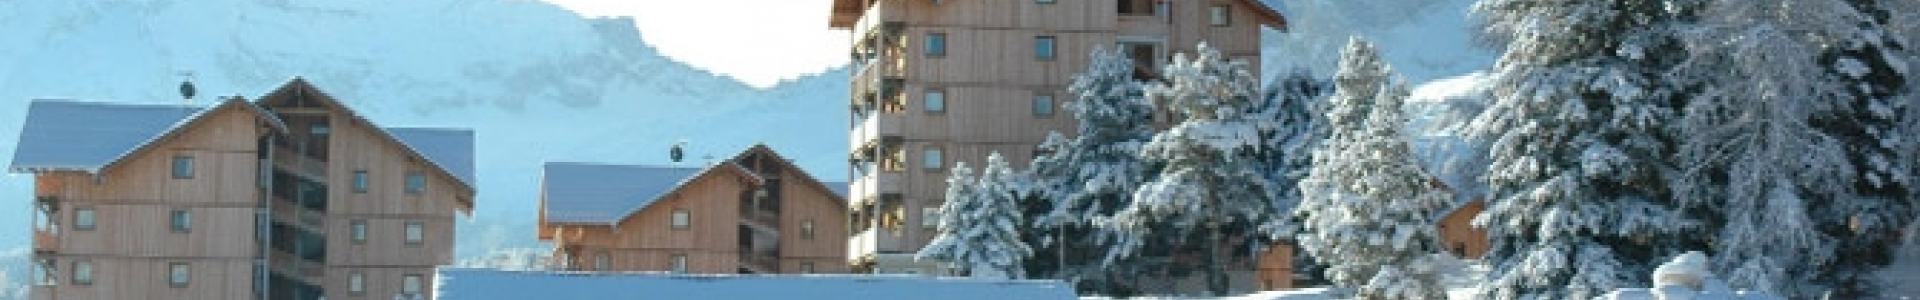 Travelski : dernière minute ski, location 8j/7n en résidence, jusqu'à - 43%